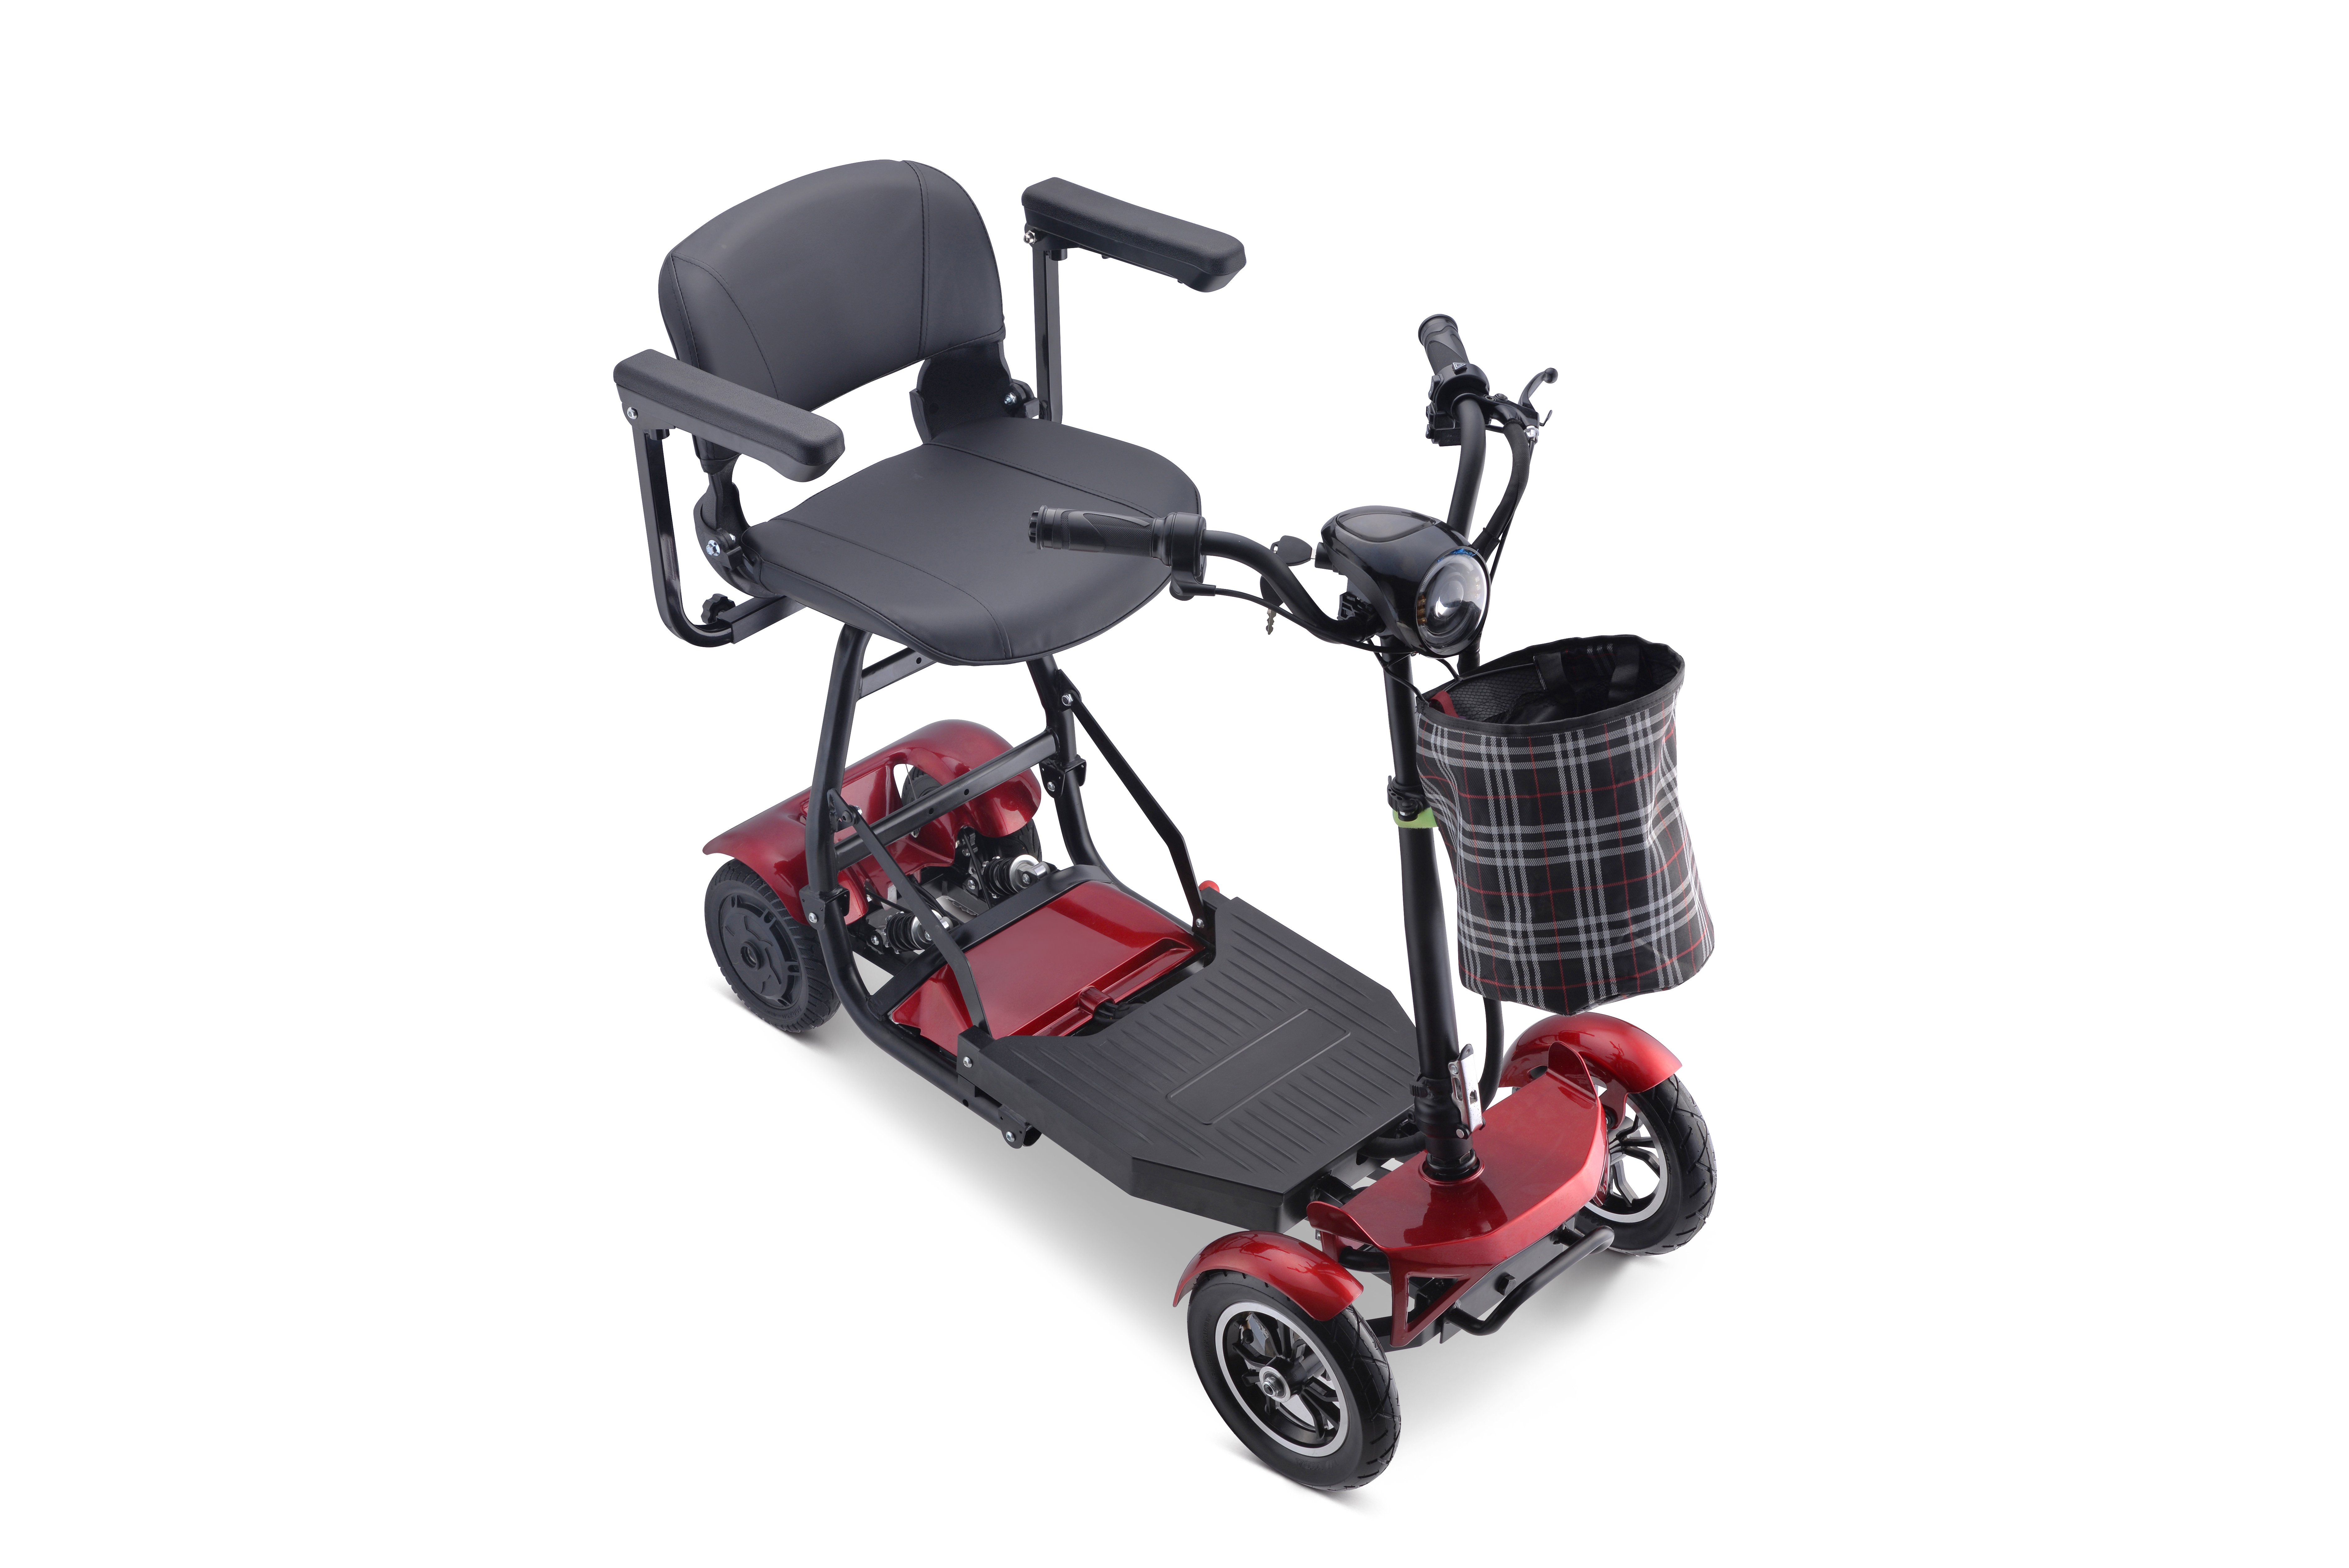 Nuevo barato adulto portátil de litio eléctrico plegable movilidad scooter eléctrico 4 ruedas scooter para discapacitados